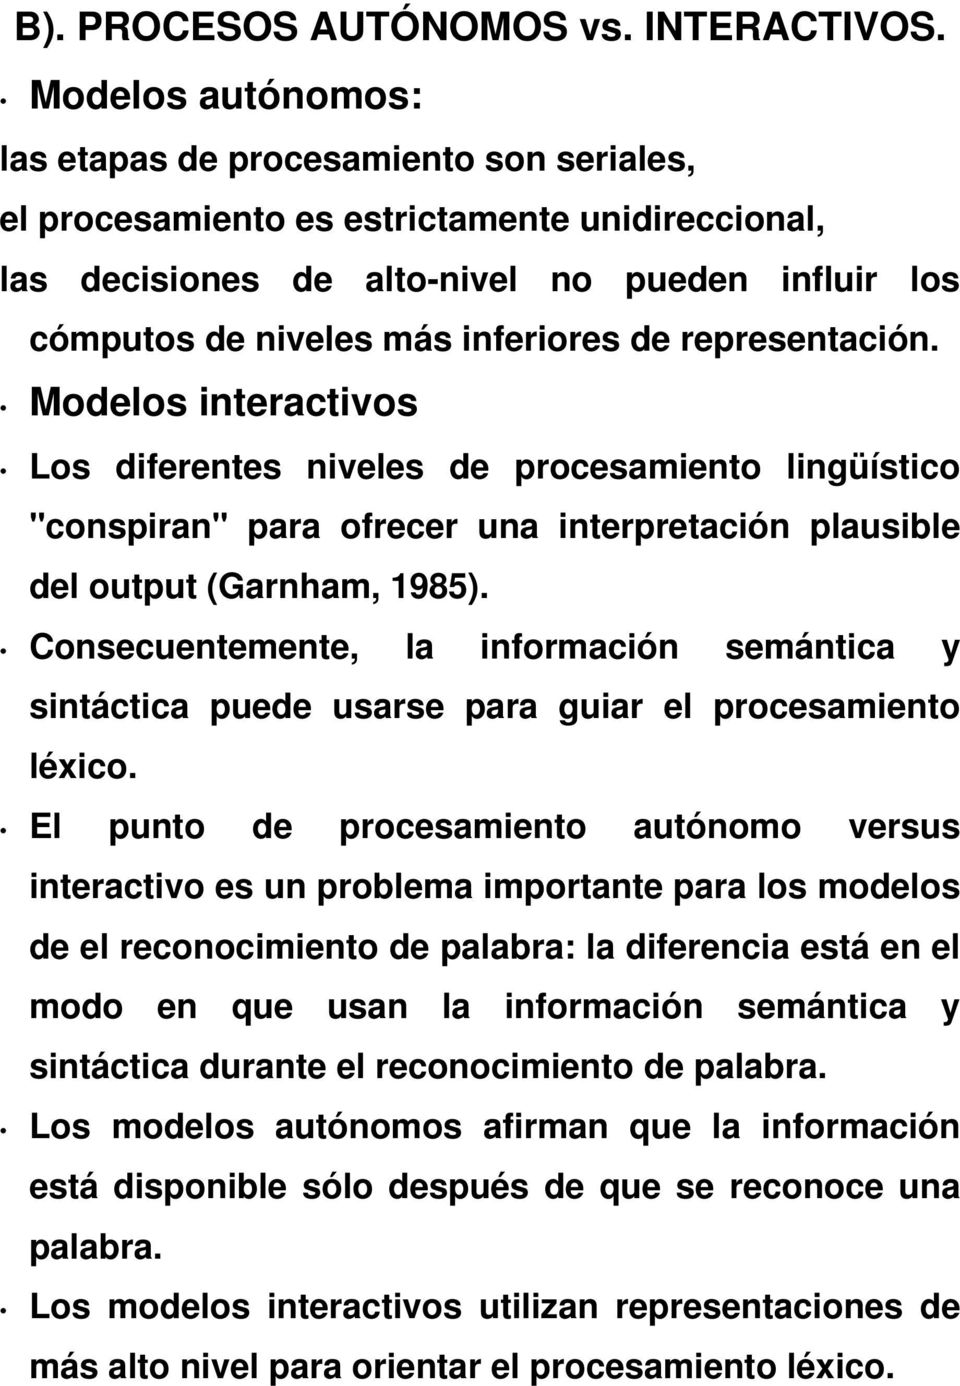 representación. Modelos interactivos Los diferentes niveles de procesamiento lingüístico "conspiran" para ofrecer una interpretación plausible del output (Garnham, 1985).